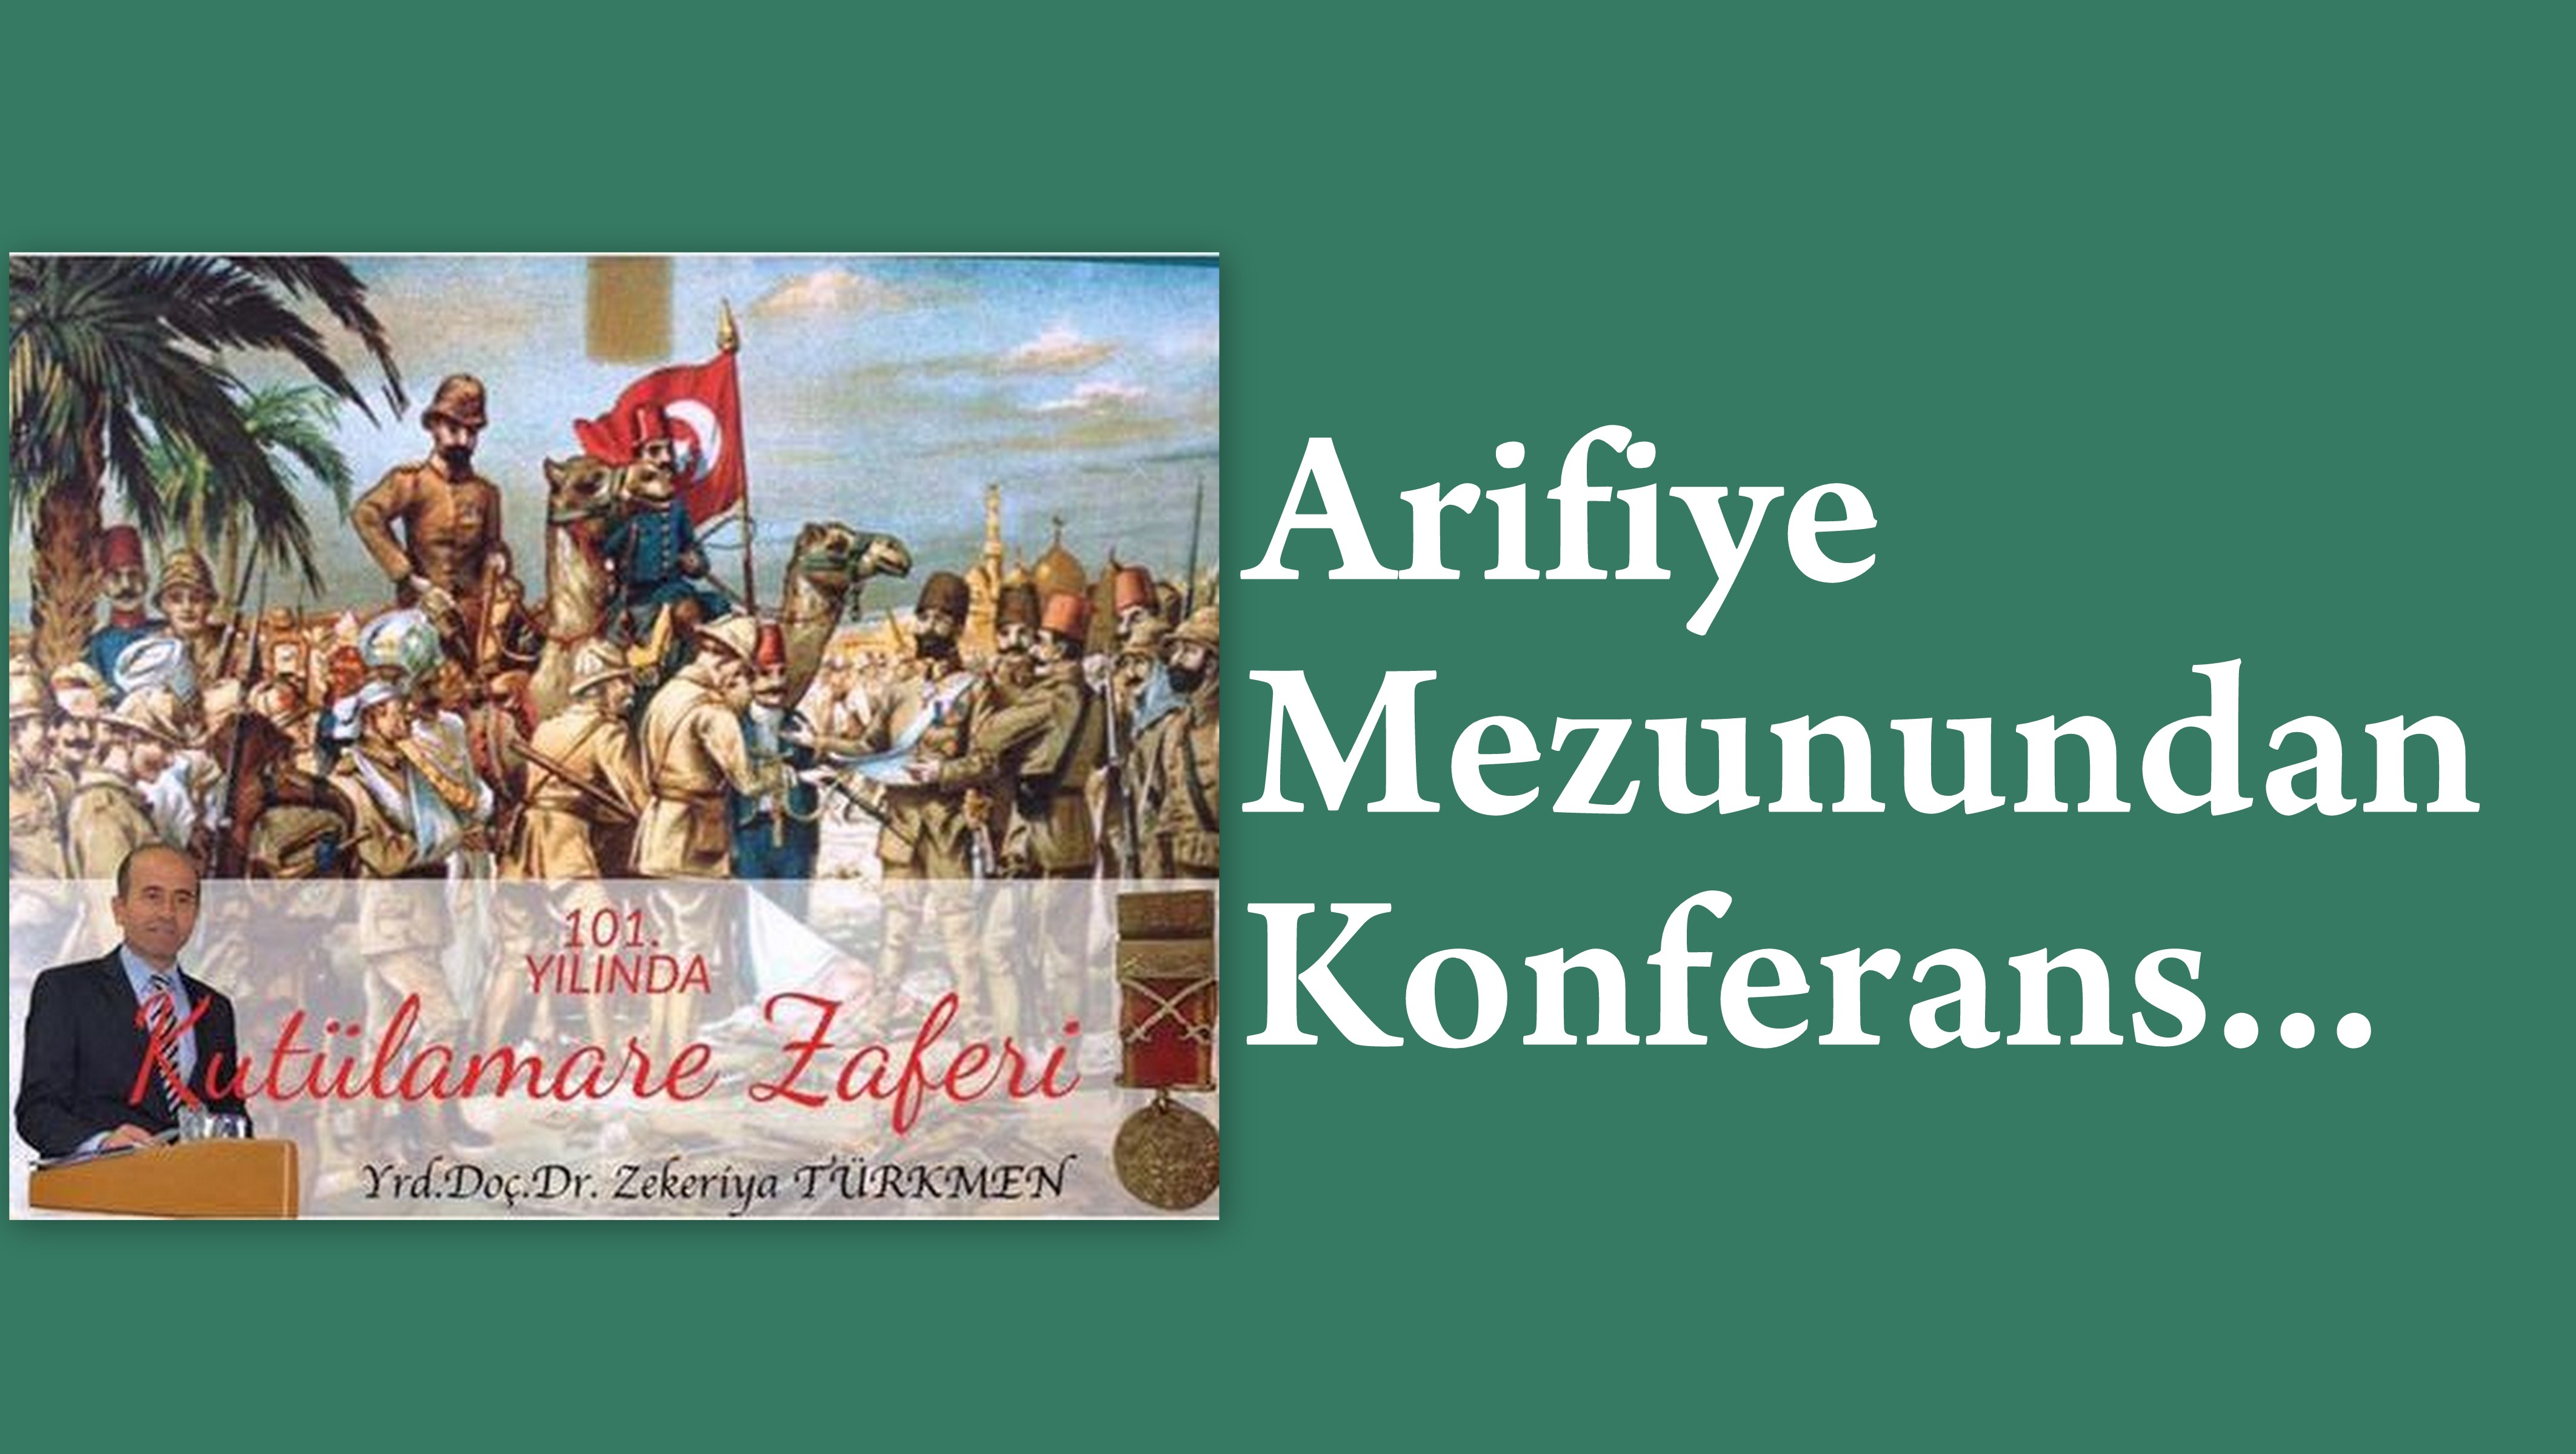 Arifiye Mezunu Zekeriya Türkmen’den   “101. Yılında Kutülamare Zaferi”konferansı